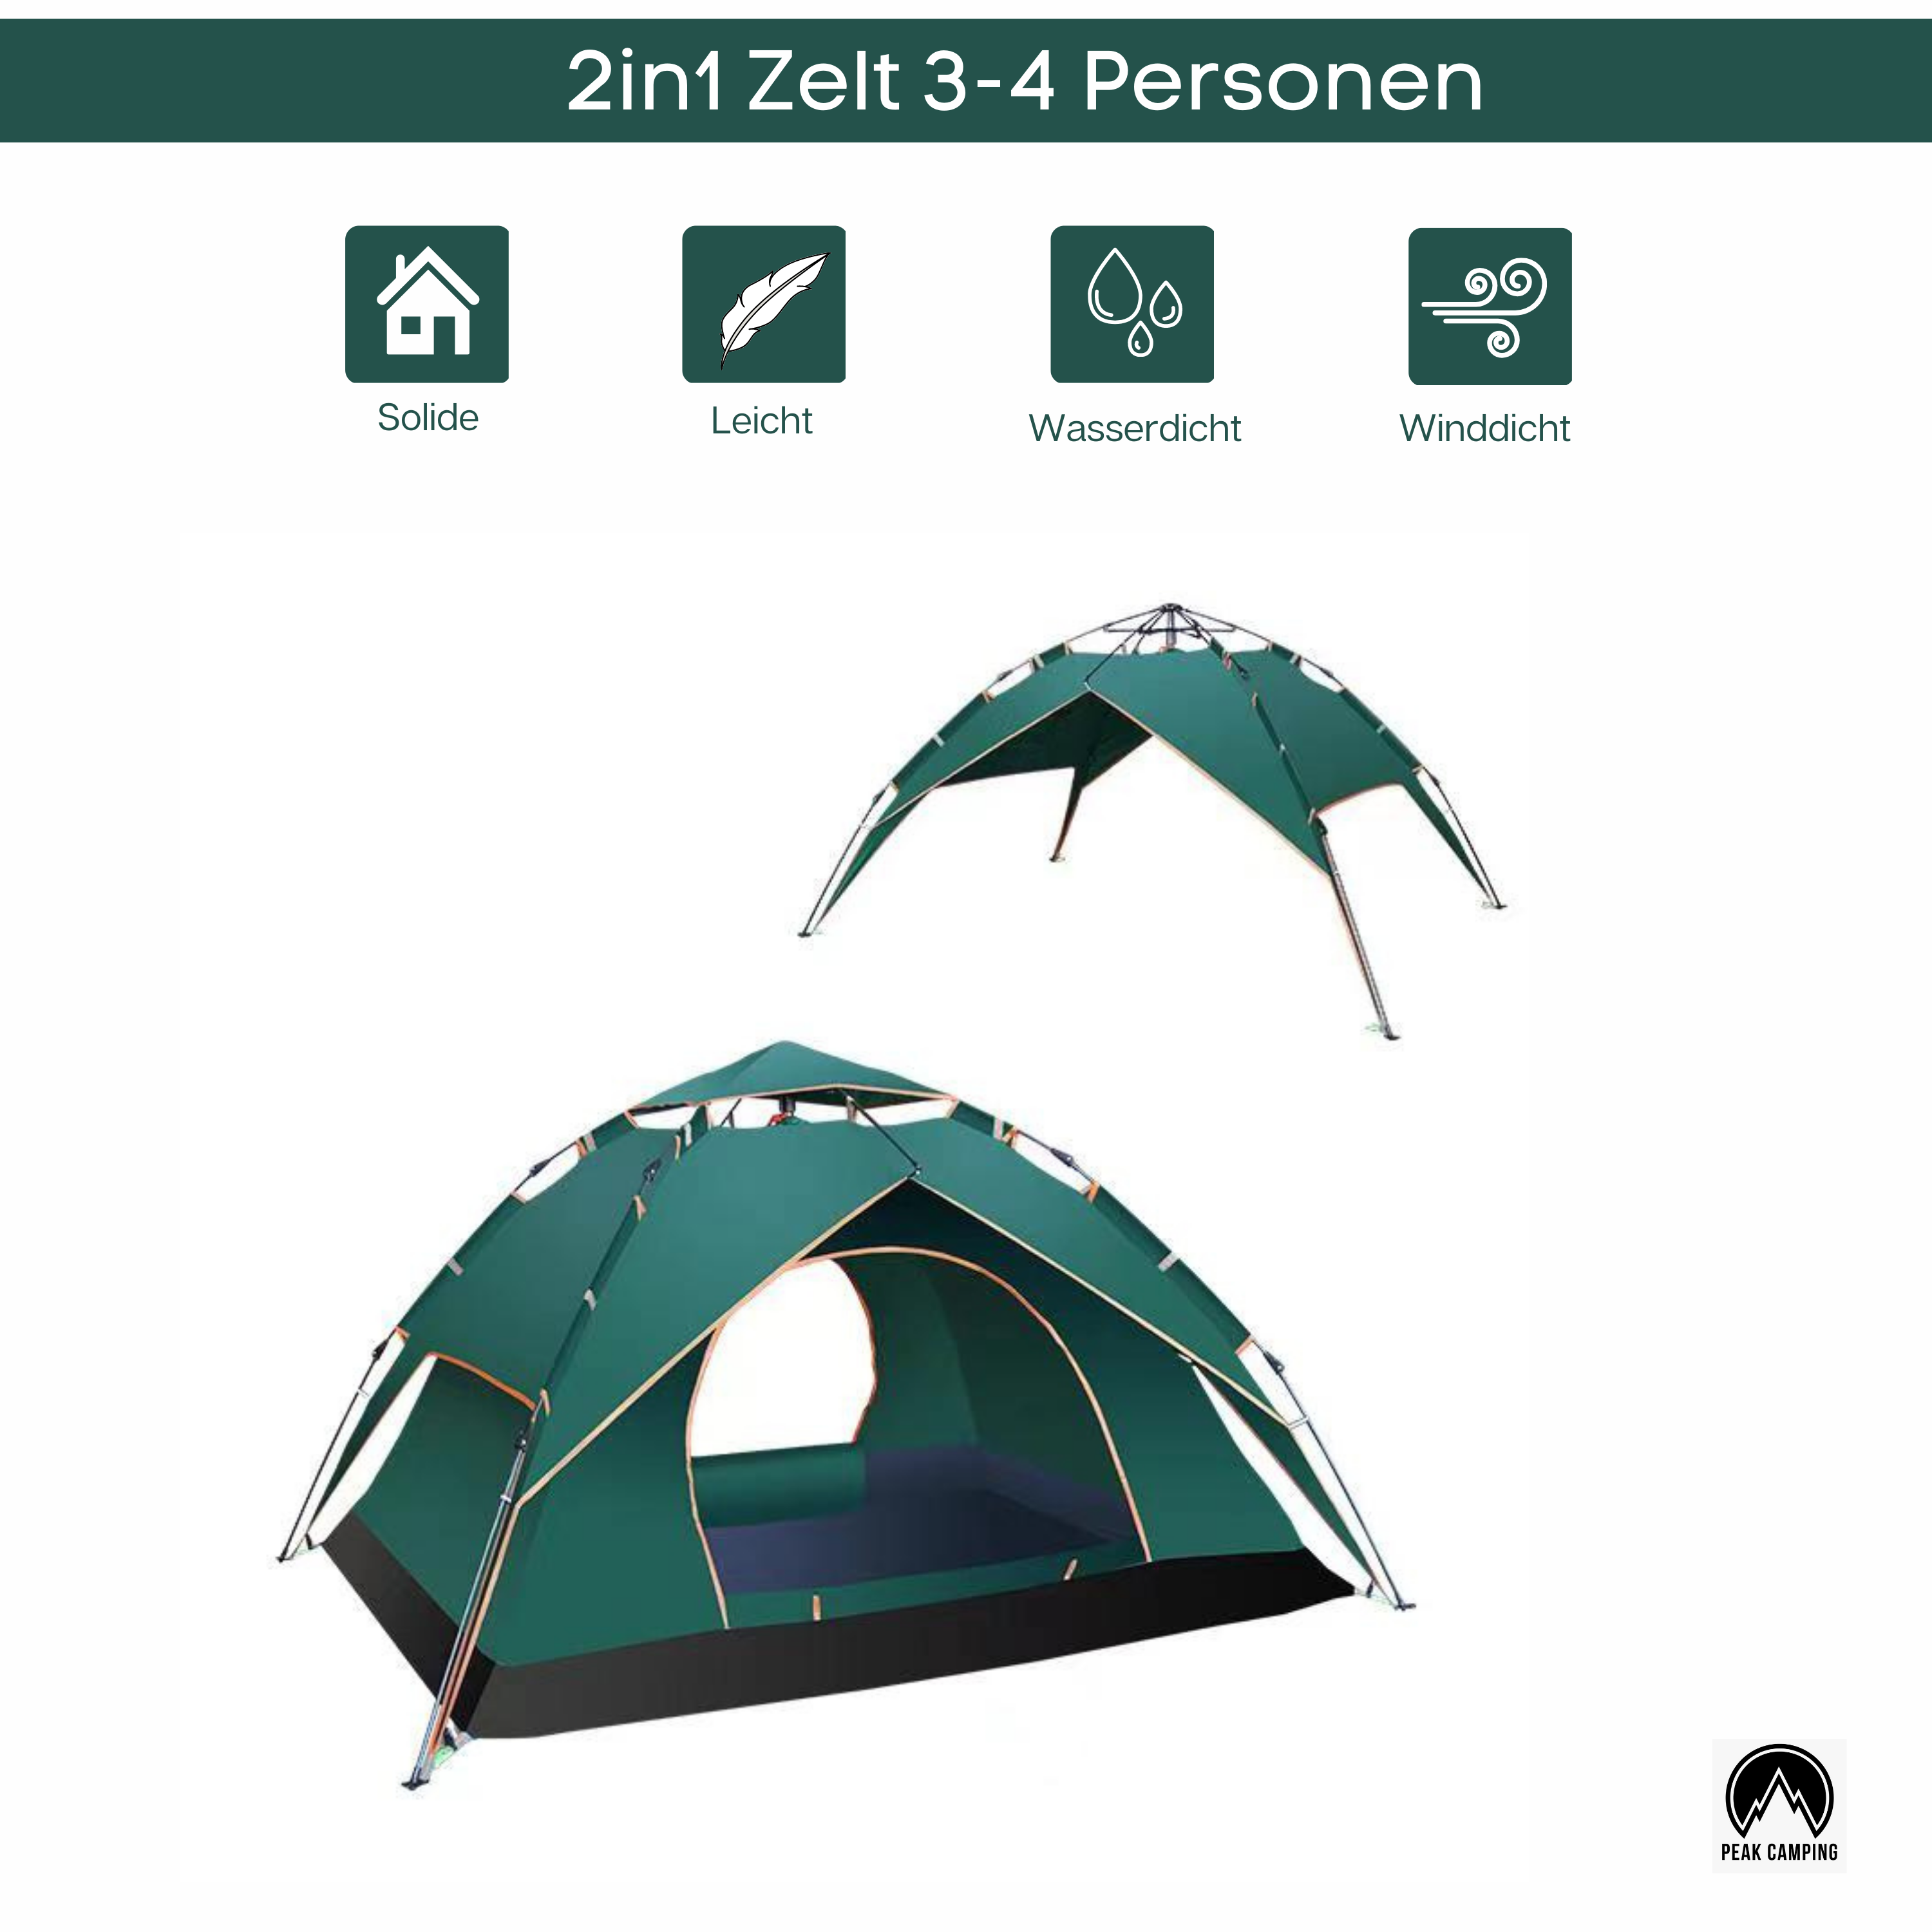 – Peak Camping OutletNow Wurfzel 2in1 Zelt Wasserdicht Personen Schnellau Zelt 3-4